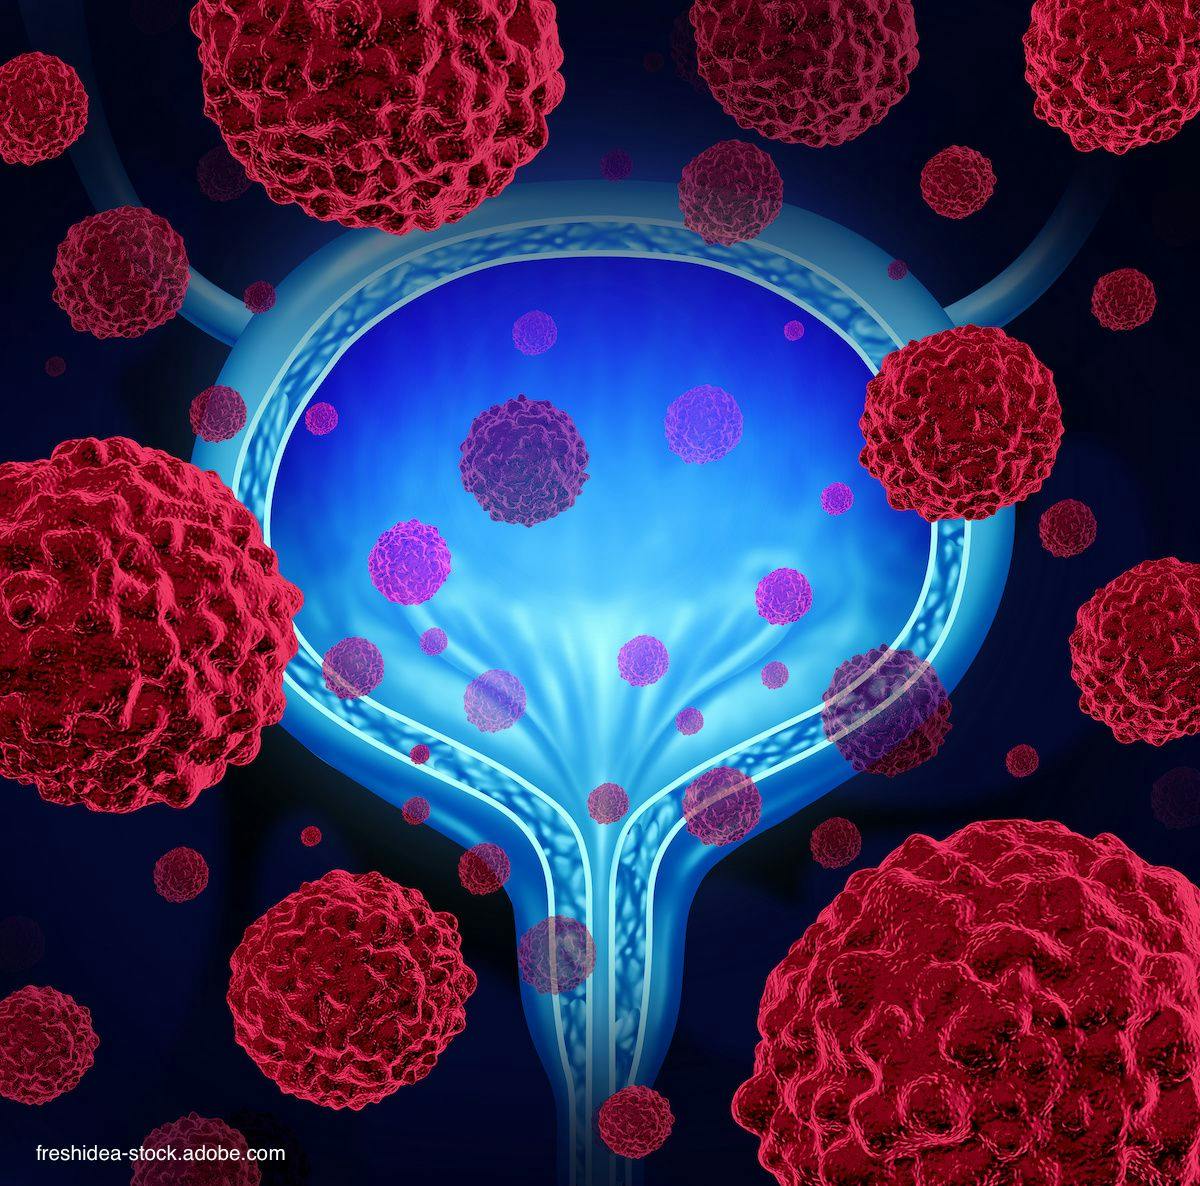 Illustration of bladder and bladder cancer cells